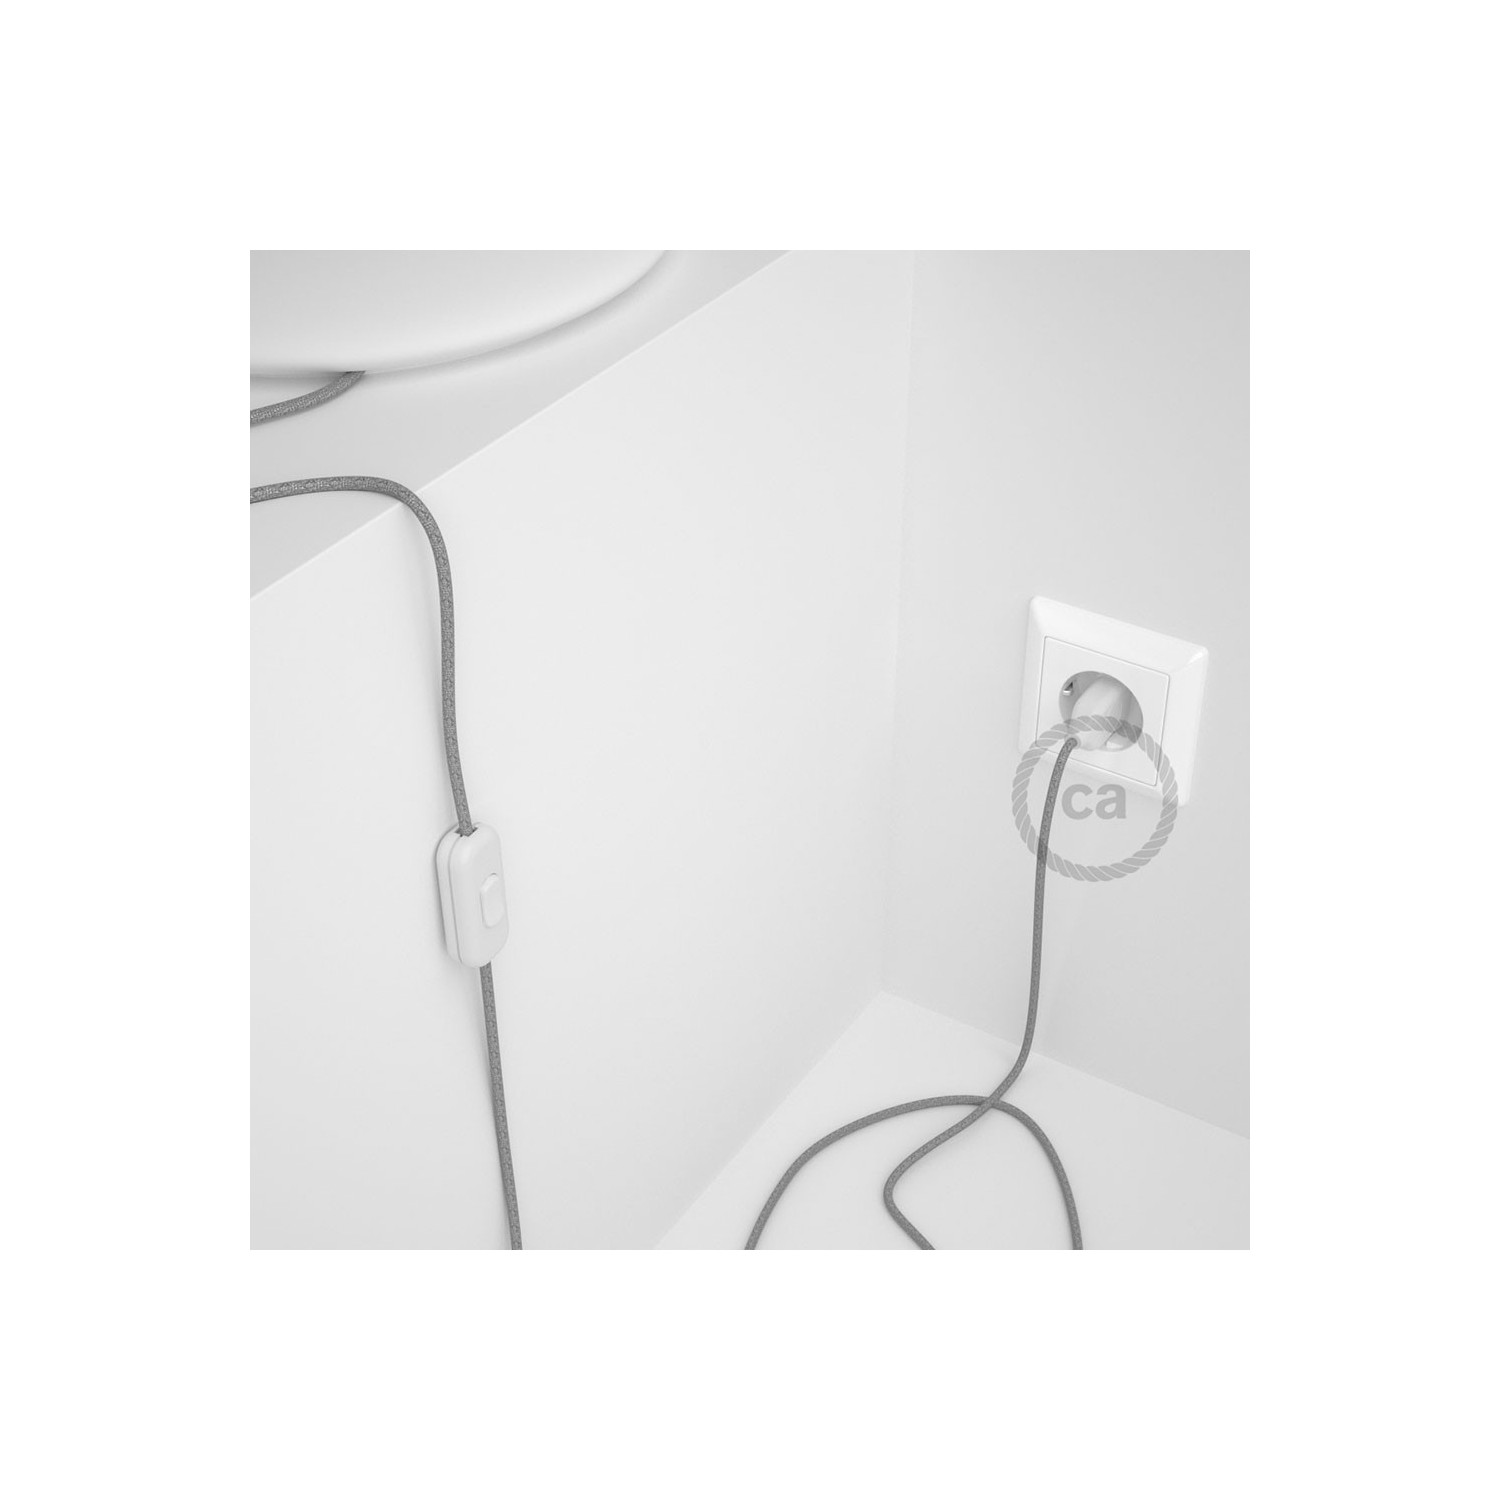 Cordon pour lampe, câble RL02 Effet Soie Paillettes Argent 1,80 m. Choisissez la couleur de la fiche et de l'interrupteur!